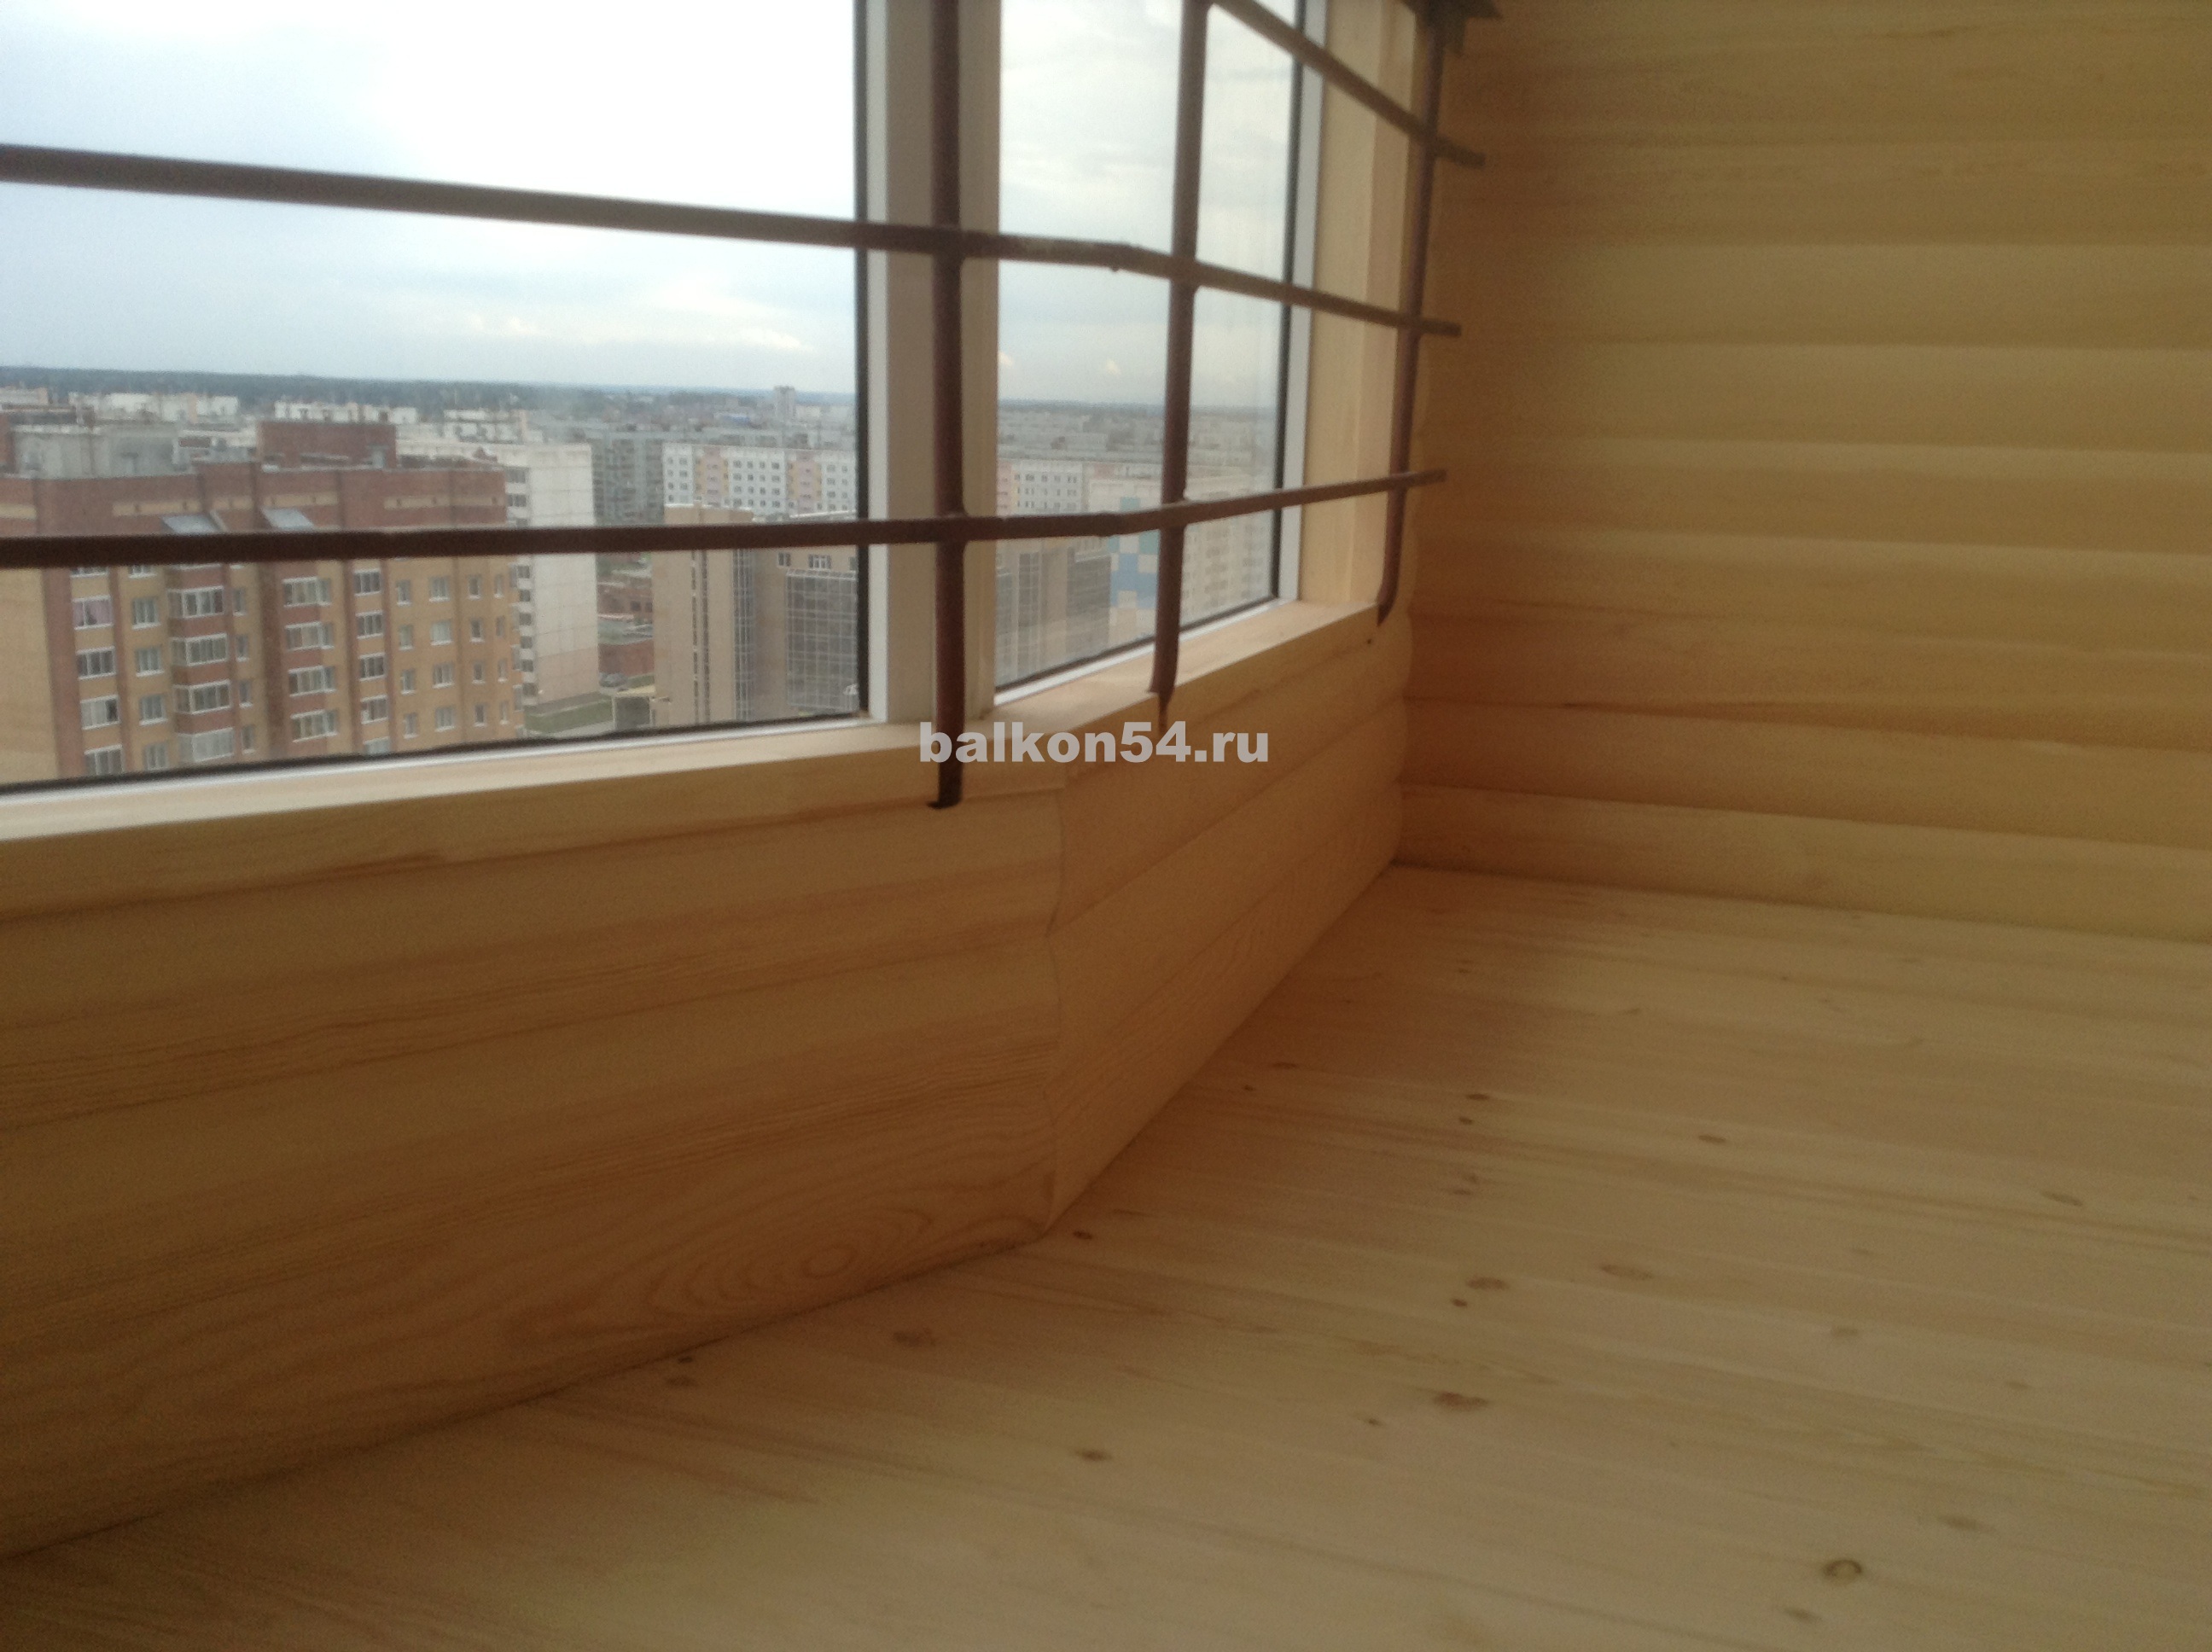 Обшивка балкона блок-хаусом класса Экстра